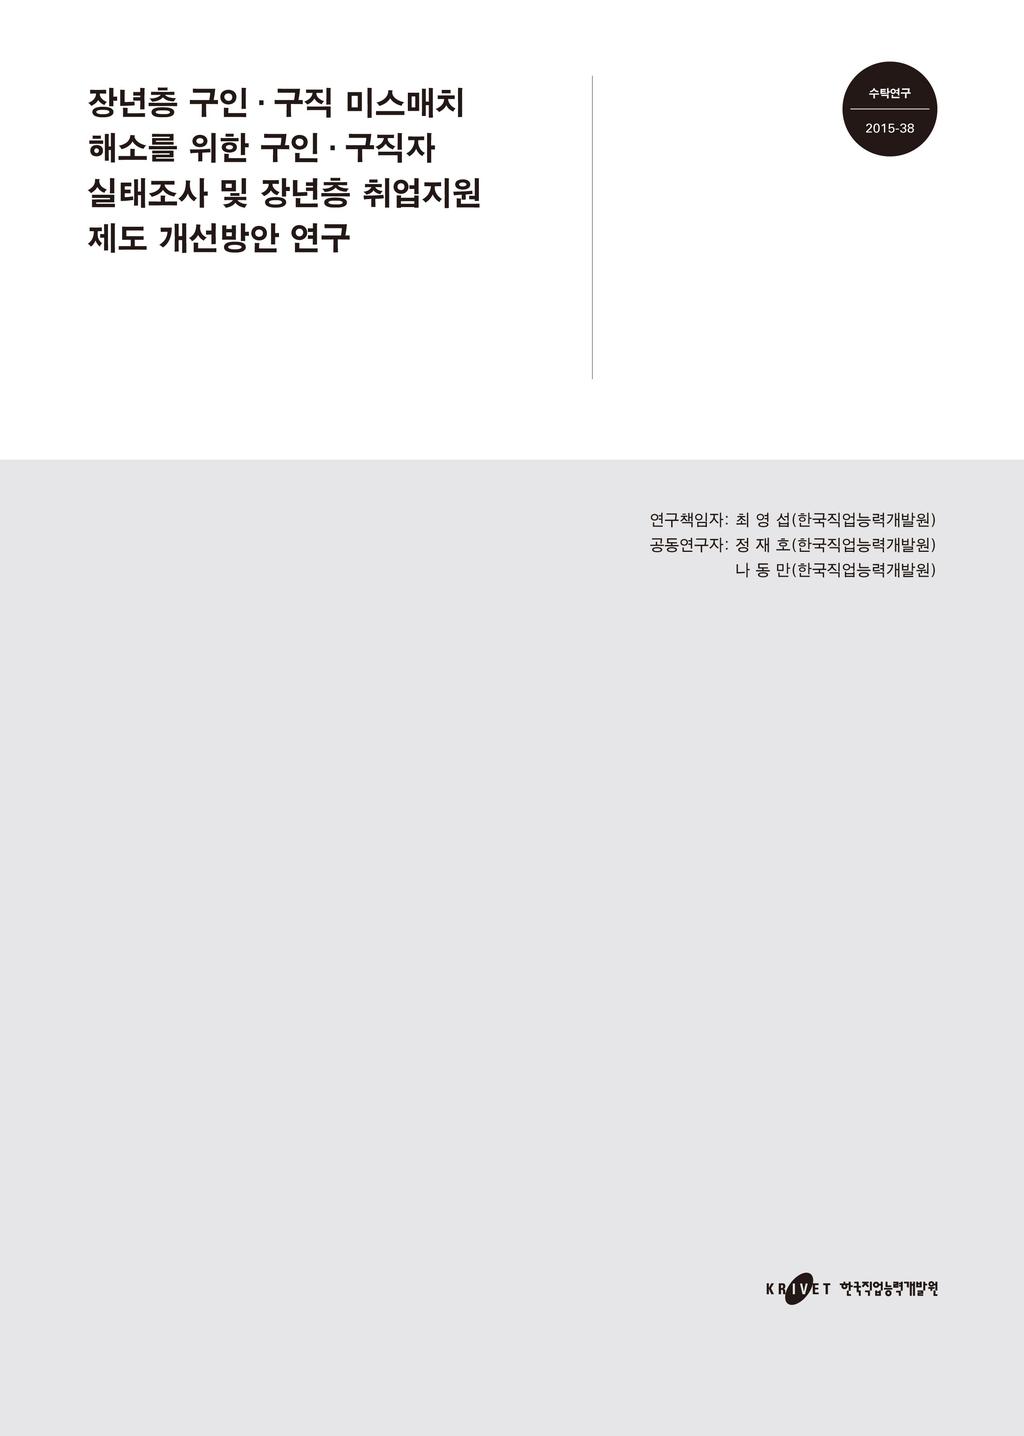 최영섭 ( 한국직업능력개발원 ) 공동연구진 : 정재호 (